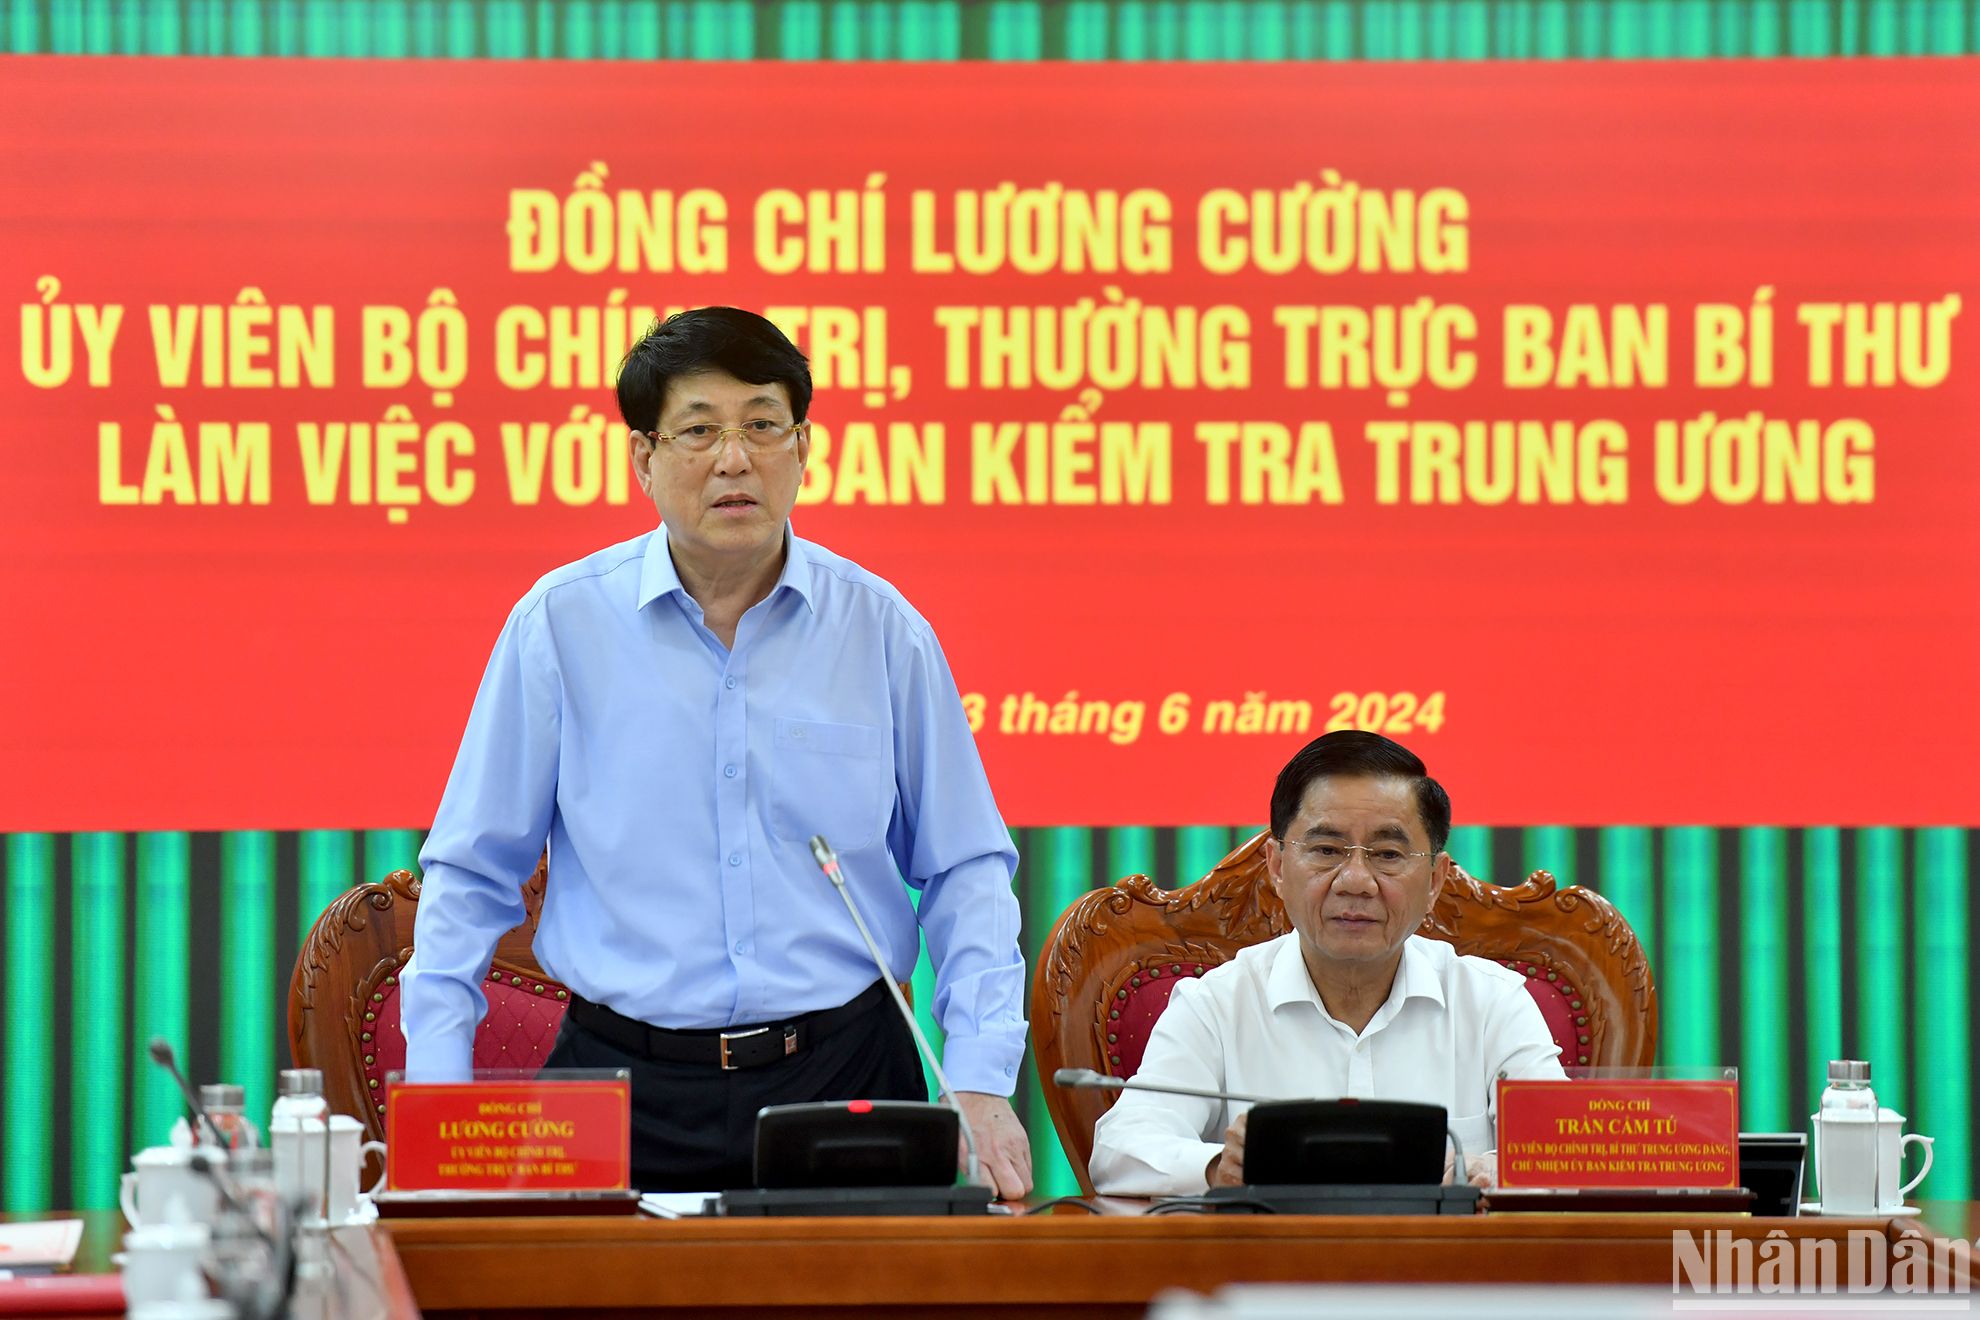 Đồng chí Lương Cường, Ủy viên Bộ Chính trị, Thường trực Ban Bí thư phát biểu tại buổi làm việc với Ủy ban Kiểm tra Trung ương.